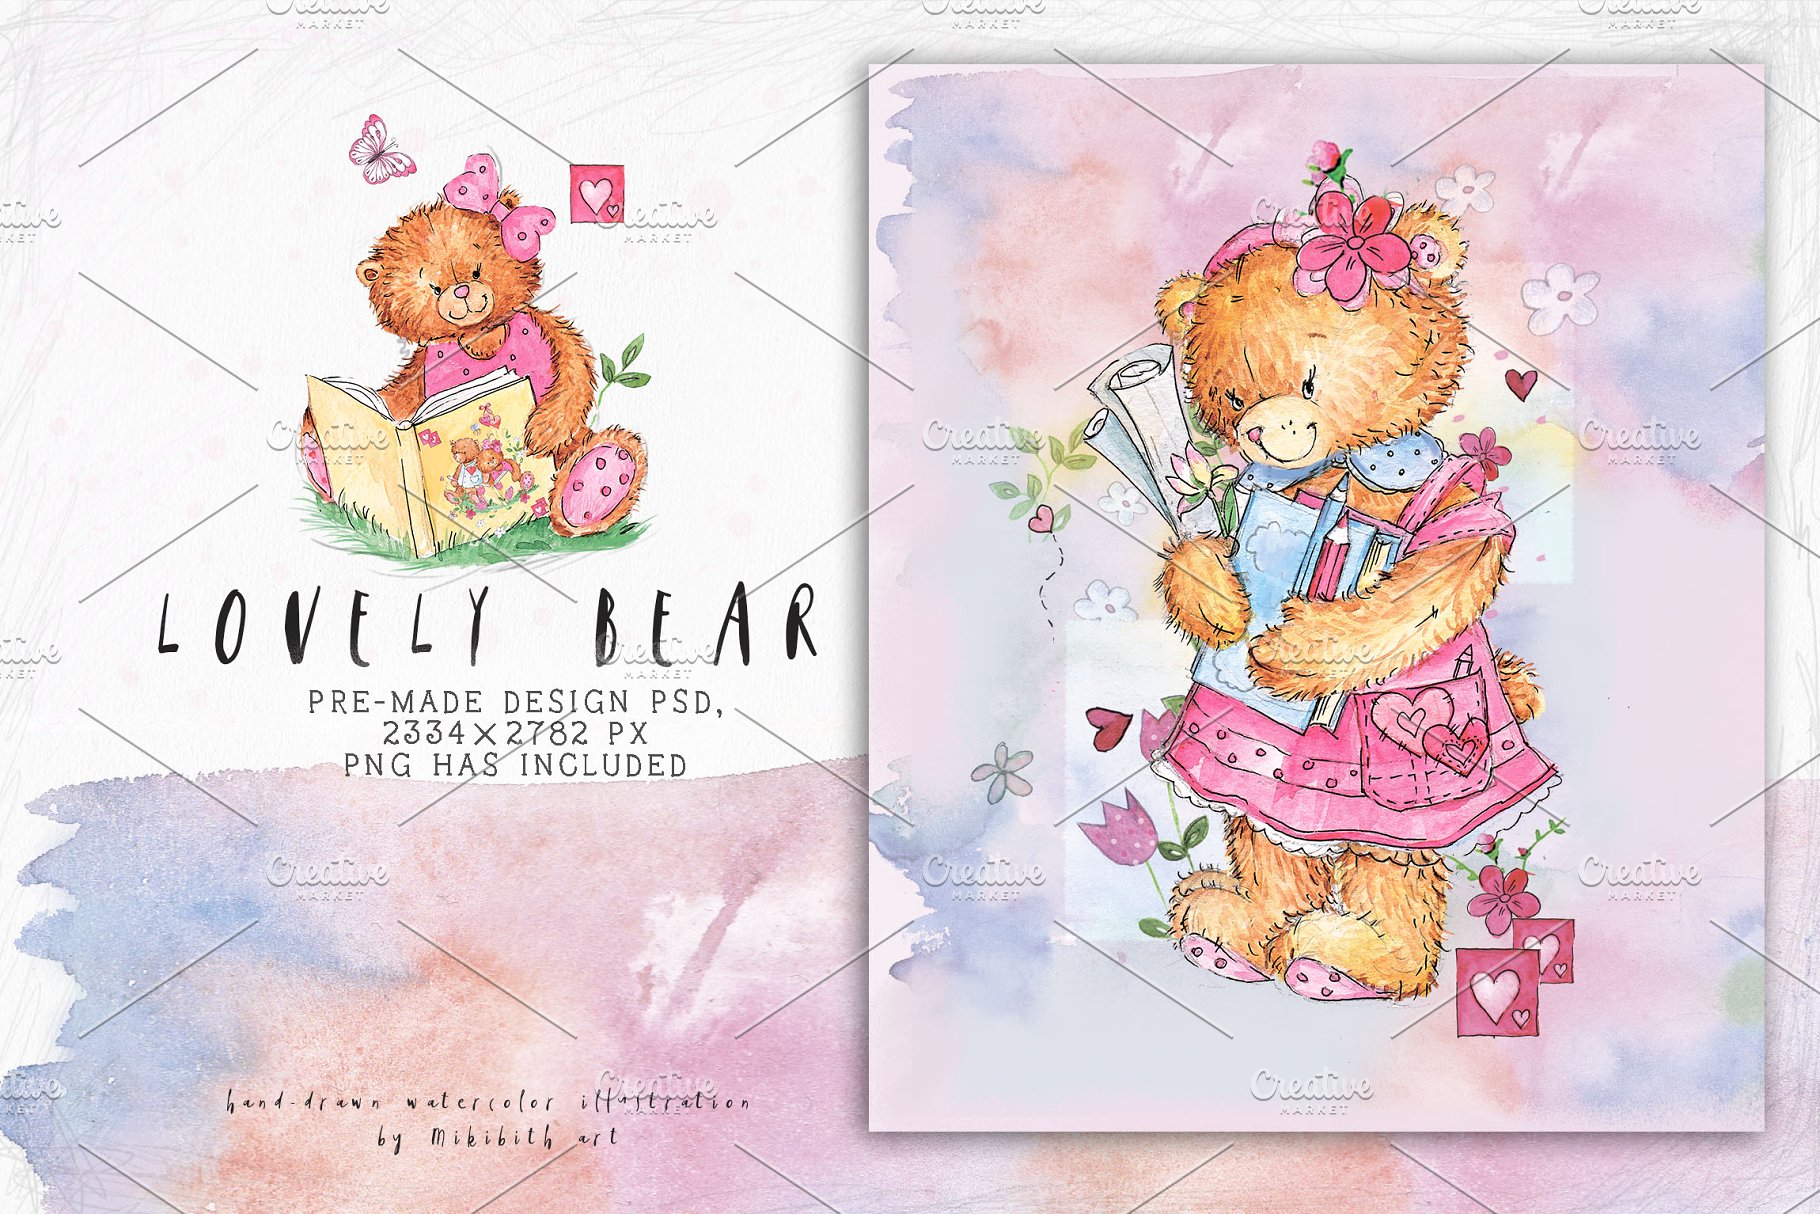 可爱熊与老鼠手绘剪切画素材 SO LOVELY BEARS+ 1 MOUSE :)插图(5)